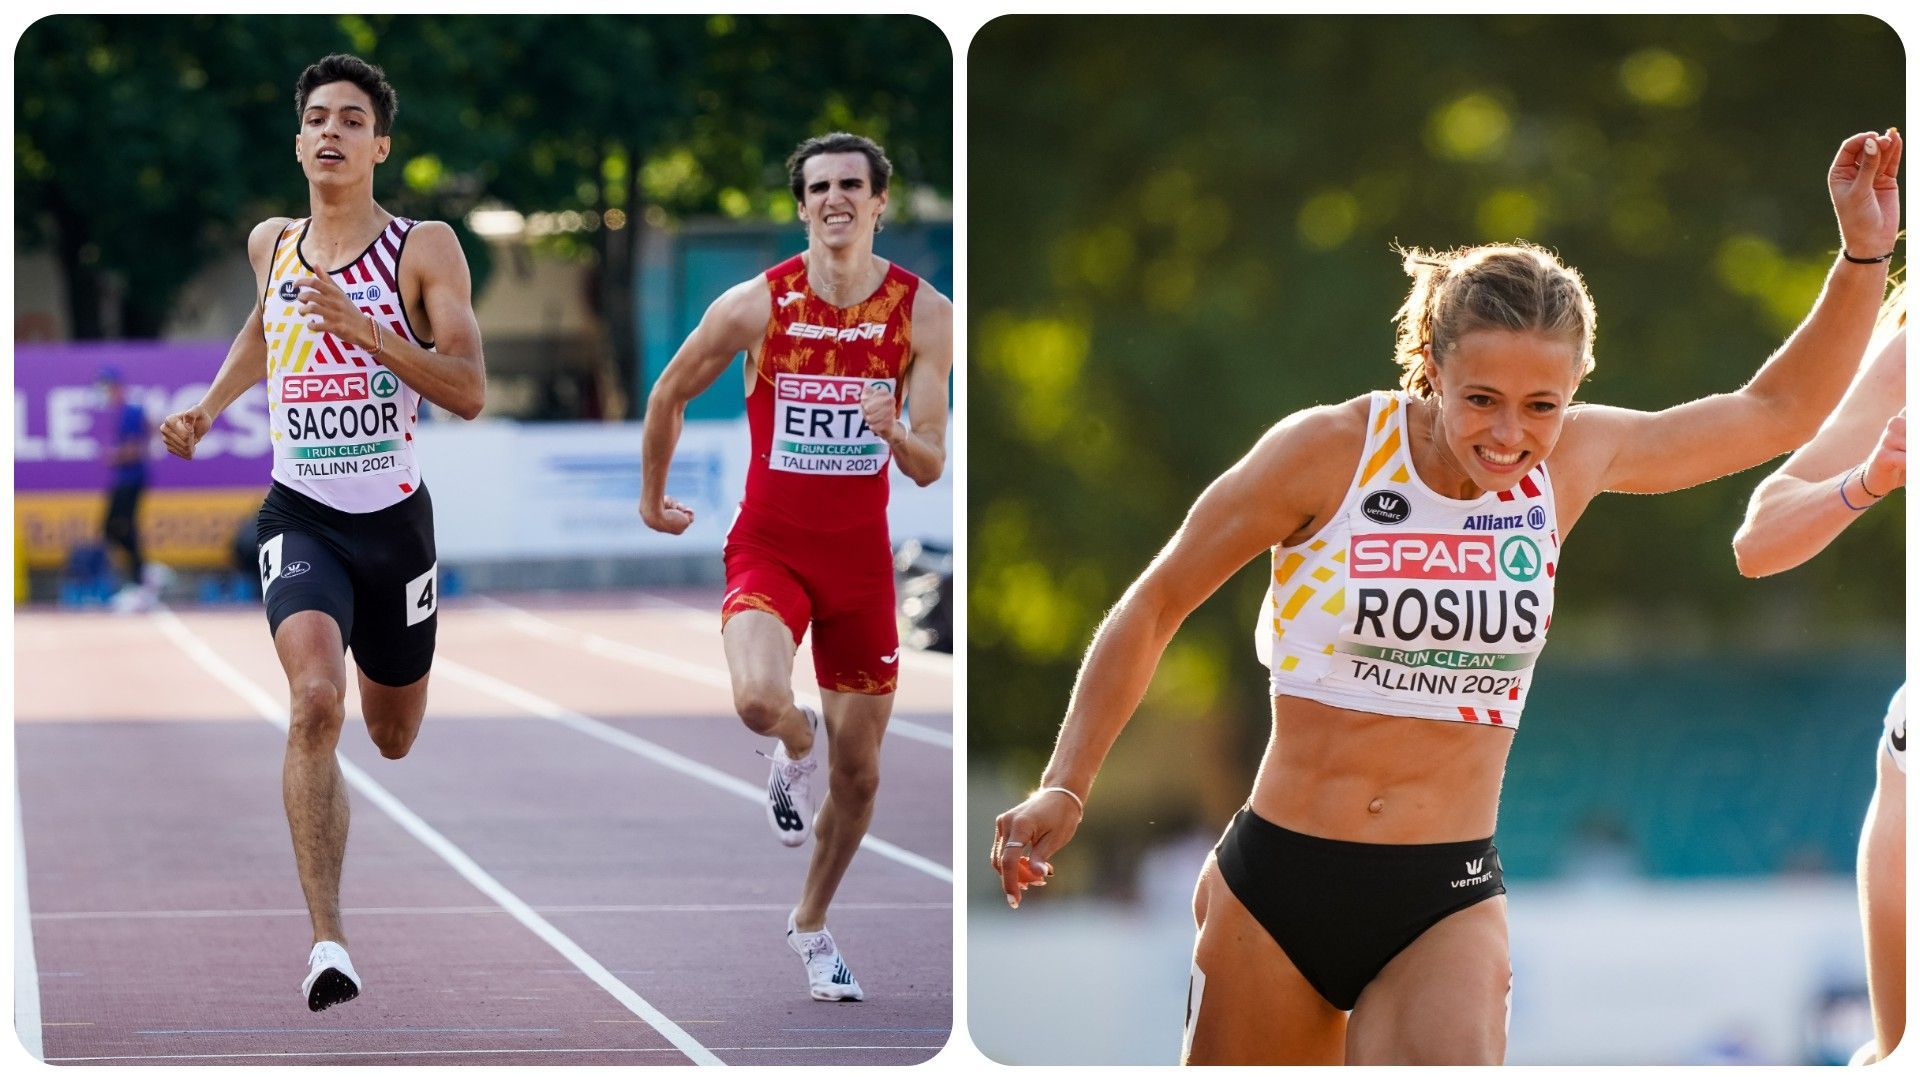 Rani Rosius est devenue vice championne d'Europe U23 à l'Euro de Tallin, tandis que Jonathan Sacoor s'est qualifié pour la finale du 400m.